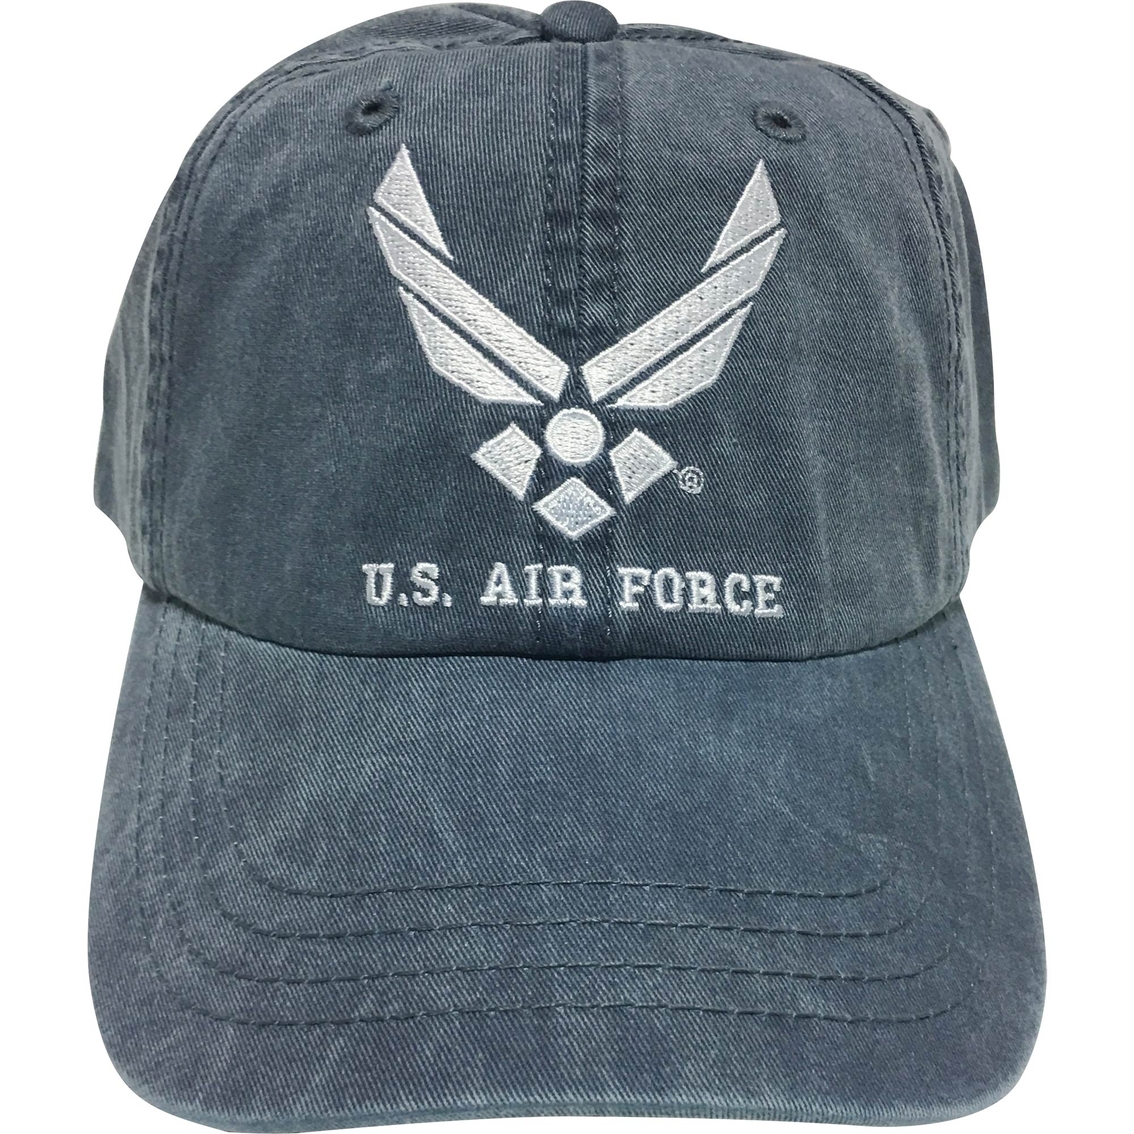 BLYNC Air Force Cap